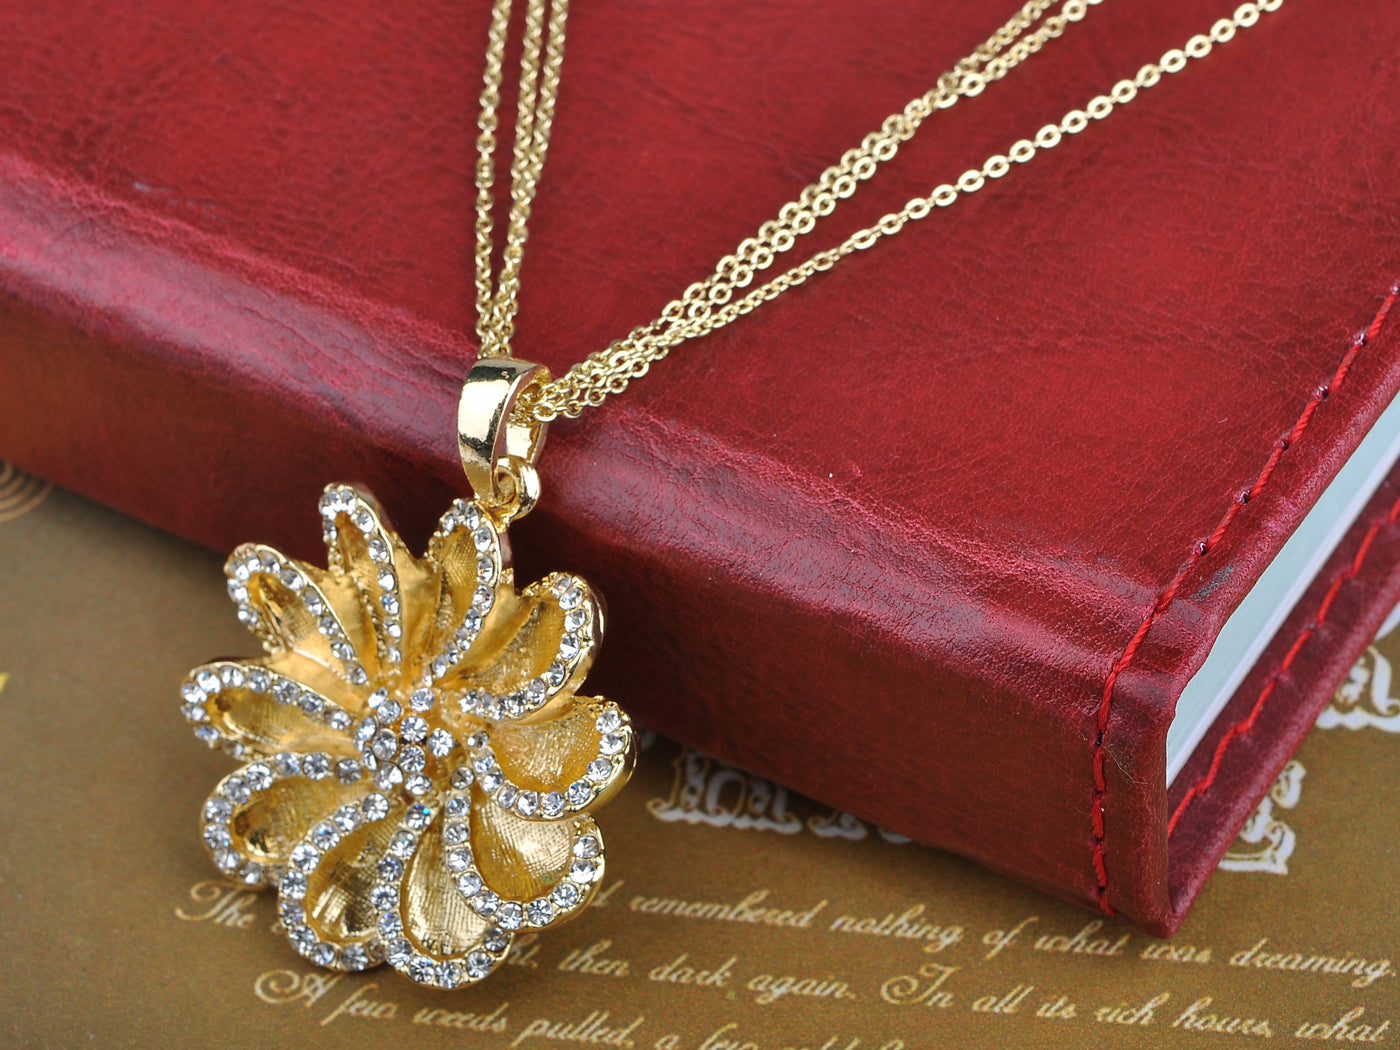 Gorgeous Daisy Flower Pendant Necklace